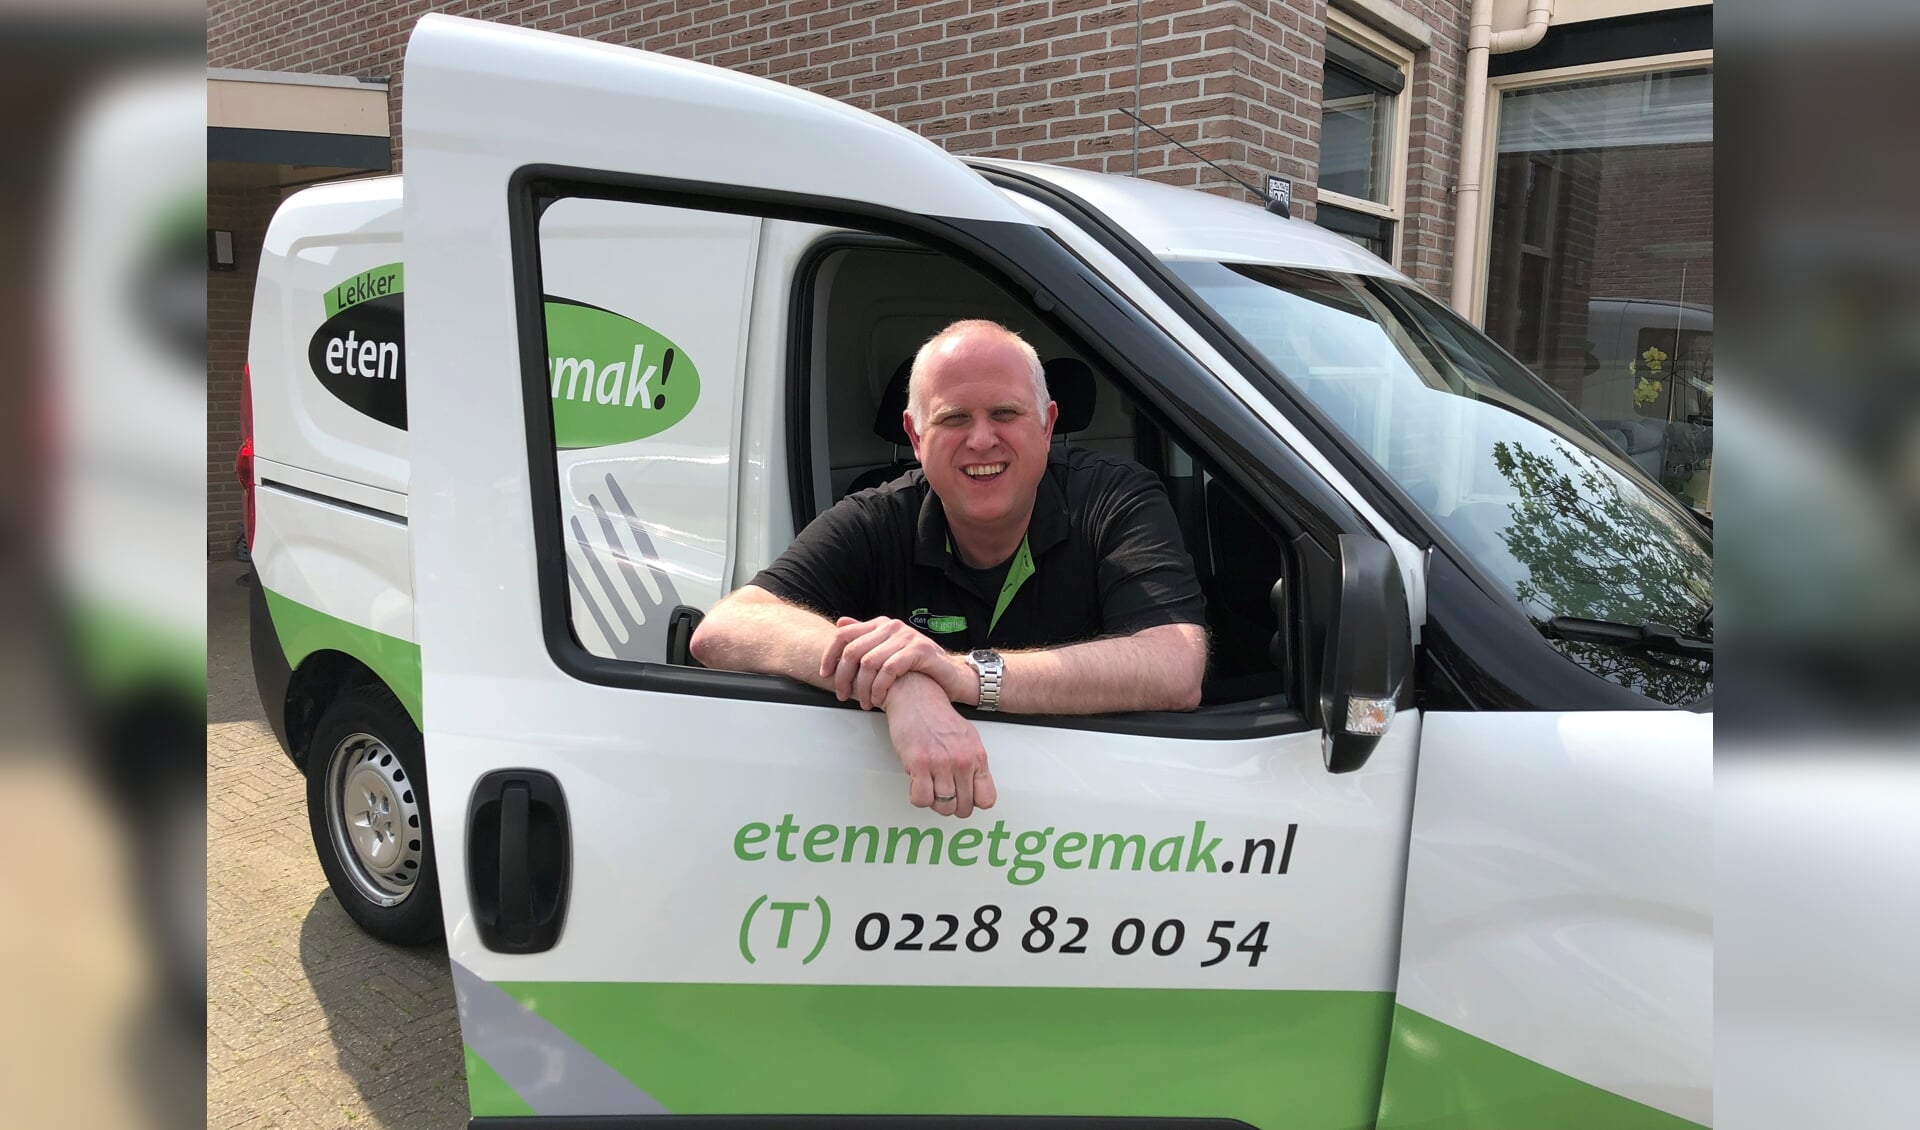 Peter Denkers levert maaltijden aan huis, nu ook in Zaanstad en Wormerland.